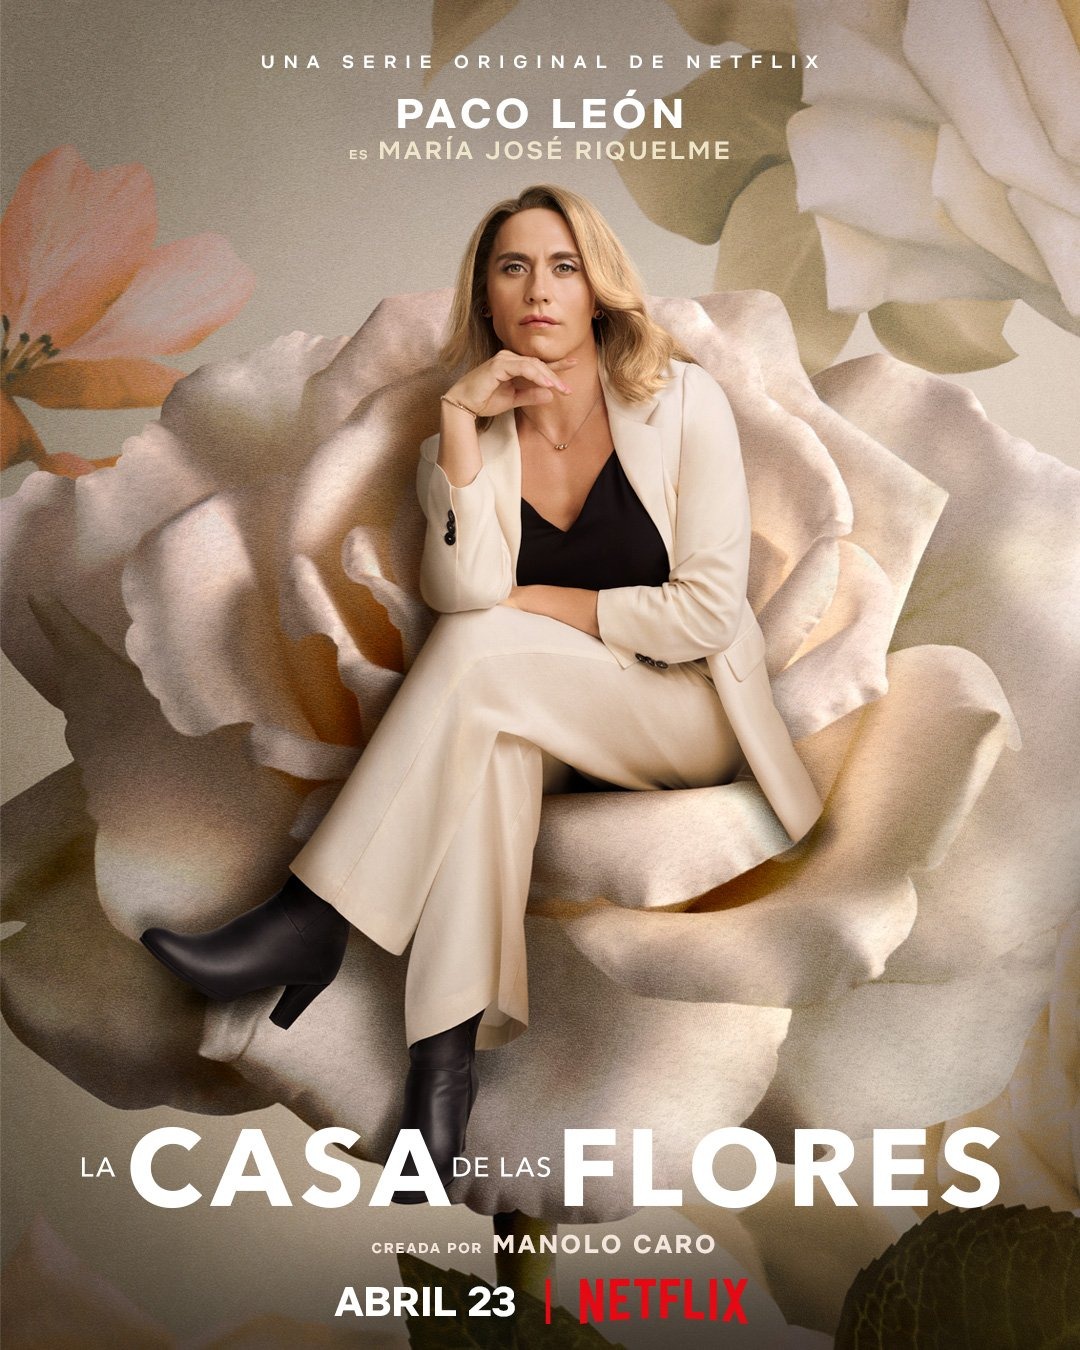 Extra Large TV Poster Image for La casa de las flores (#18 of 19)